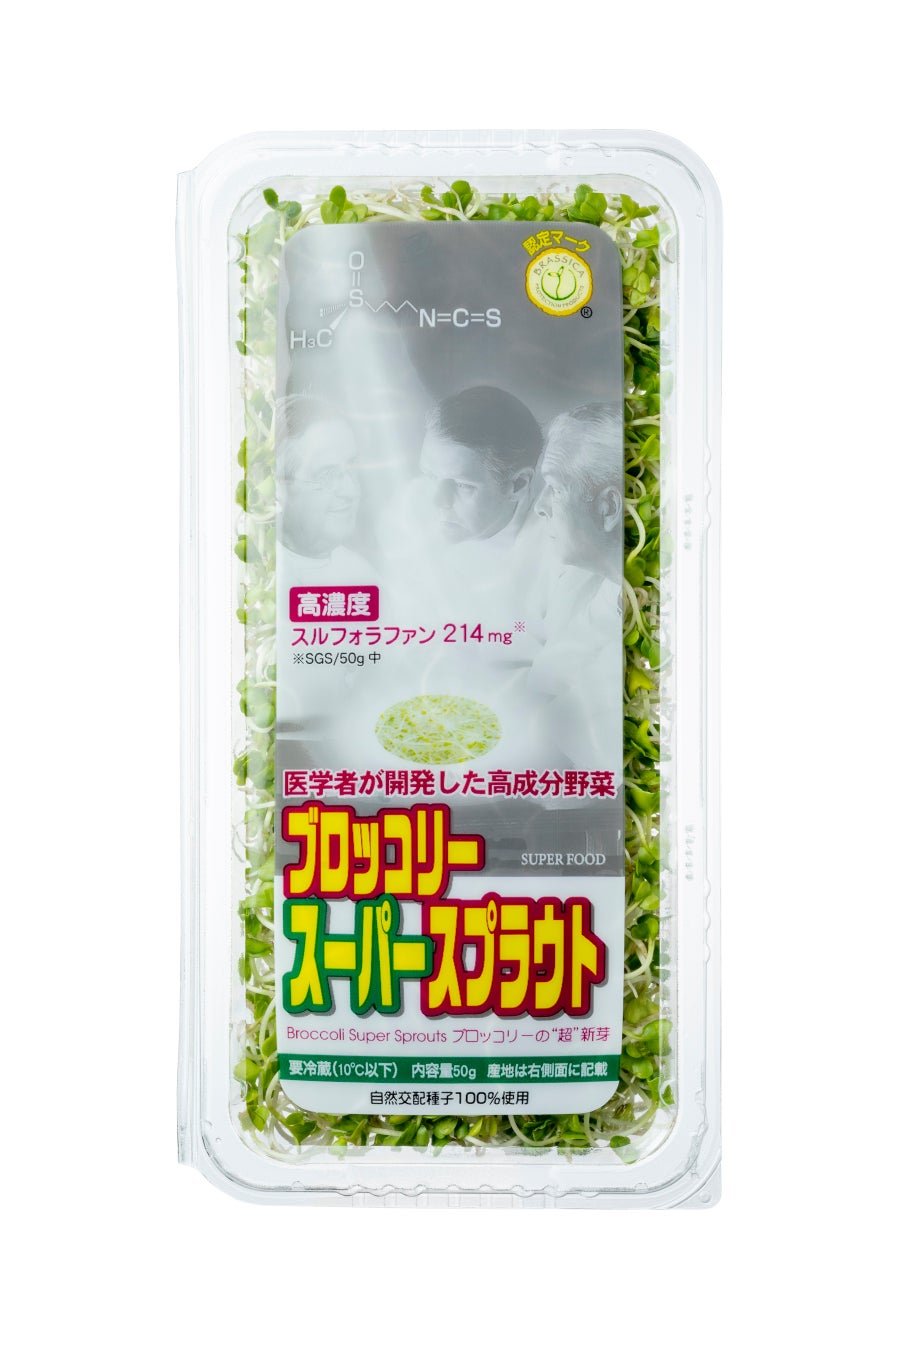 台湾で「ブロッコリー スーパースプラウト」の生産販売がスタート!!村上農園の海外向けライセンスビジネス第一弾のサブ画像3_ブロッコリースーパースプラウトパッケージ